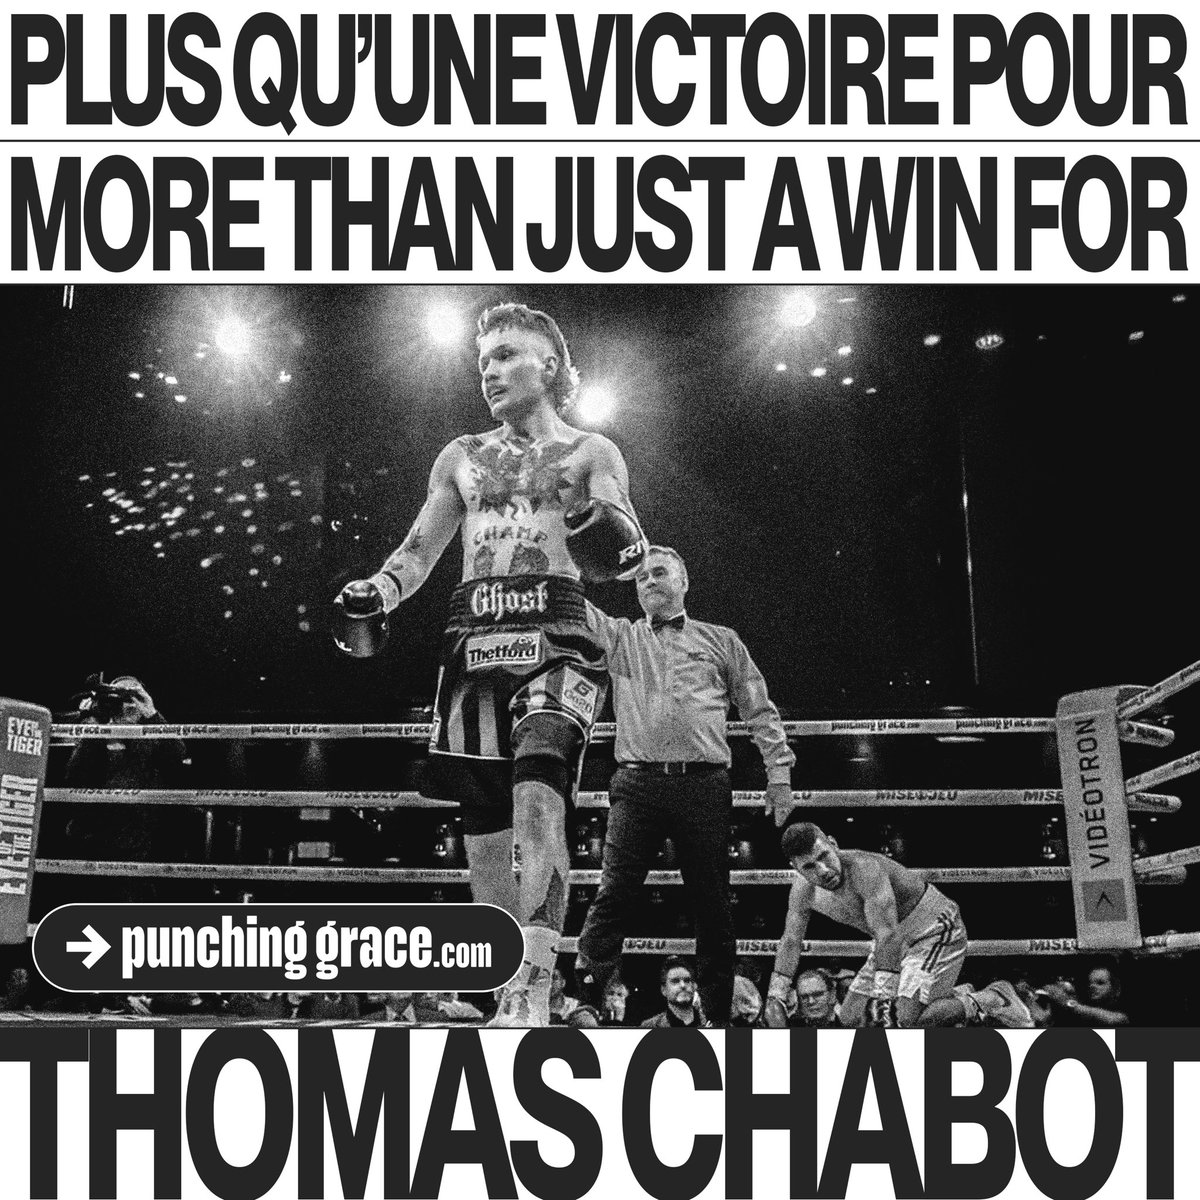 «Je suis un guerrier. Je suis fait pour ça, en prendre et en donner jusqu’à la mort. Mais contrairement à lui, moi, je pouvais aussi boxer» - Thomas Chabot.

📰➡️Jeudi dernier, ‘The Ghost’ a vaincu bien plus qu’Espino – reportage complet : punchinggrace.com/nouvelles/thom…

#BraceForImpact